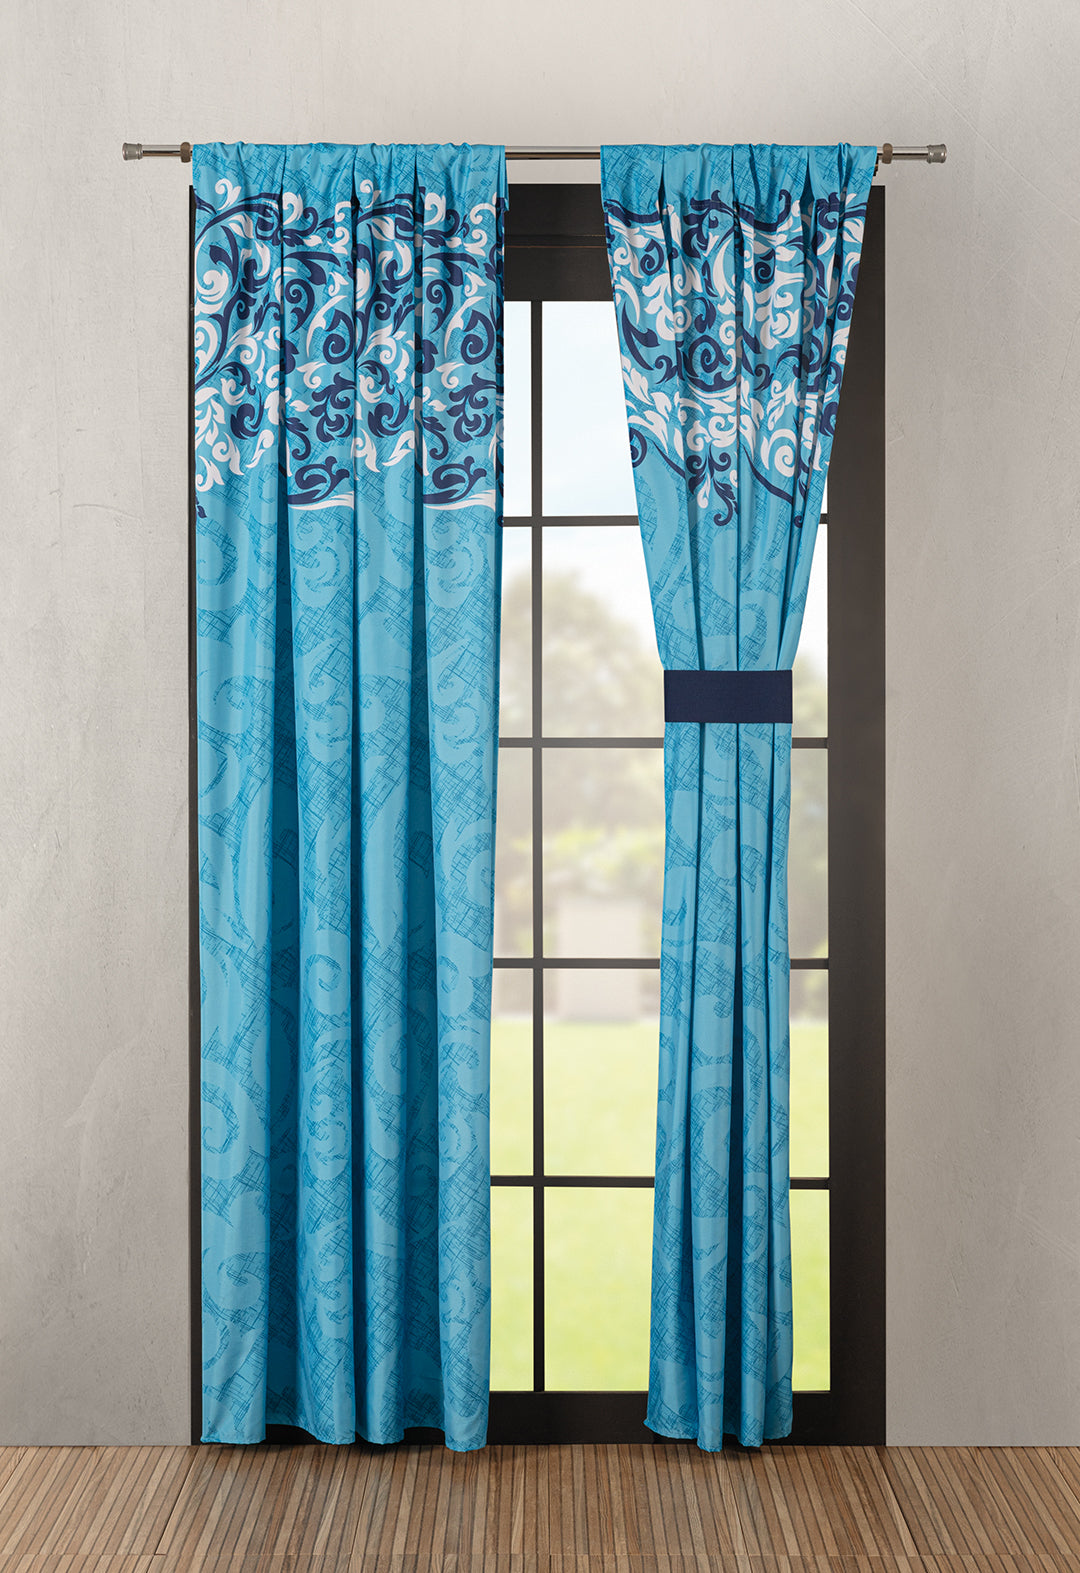 El juego de cortinas Esmeralda es tan lindo y versatil con tonos azules puedes combinarlo con Coordinado de Colcha Cobalto.